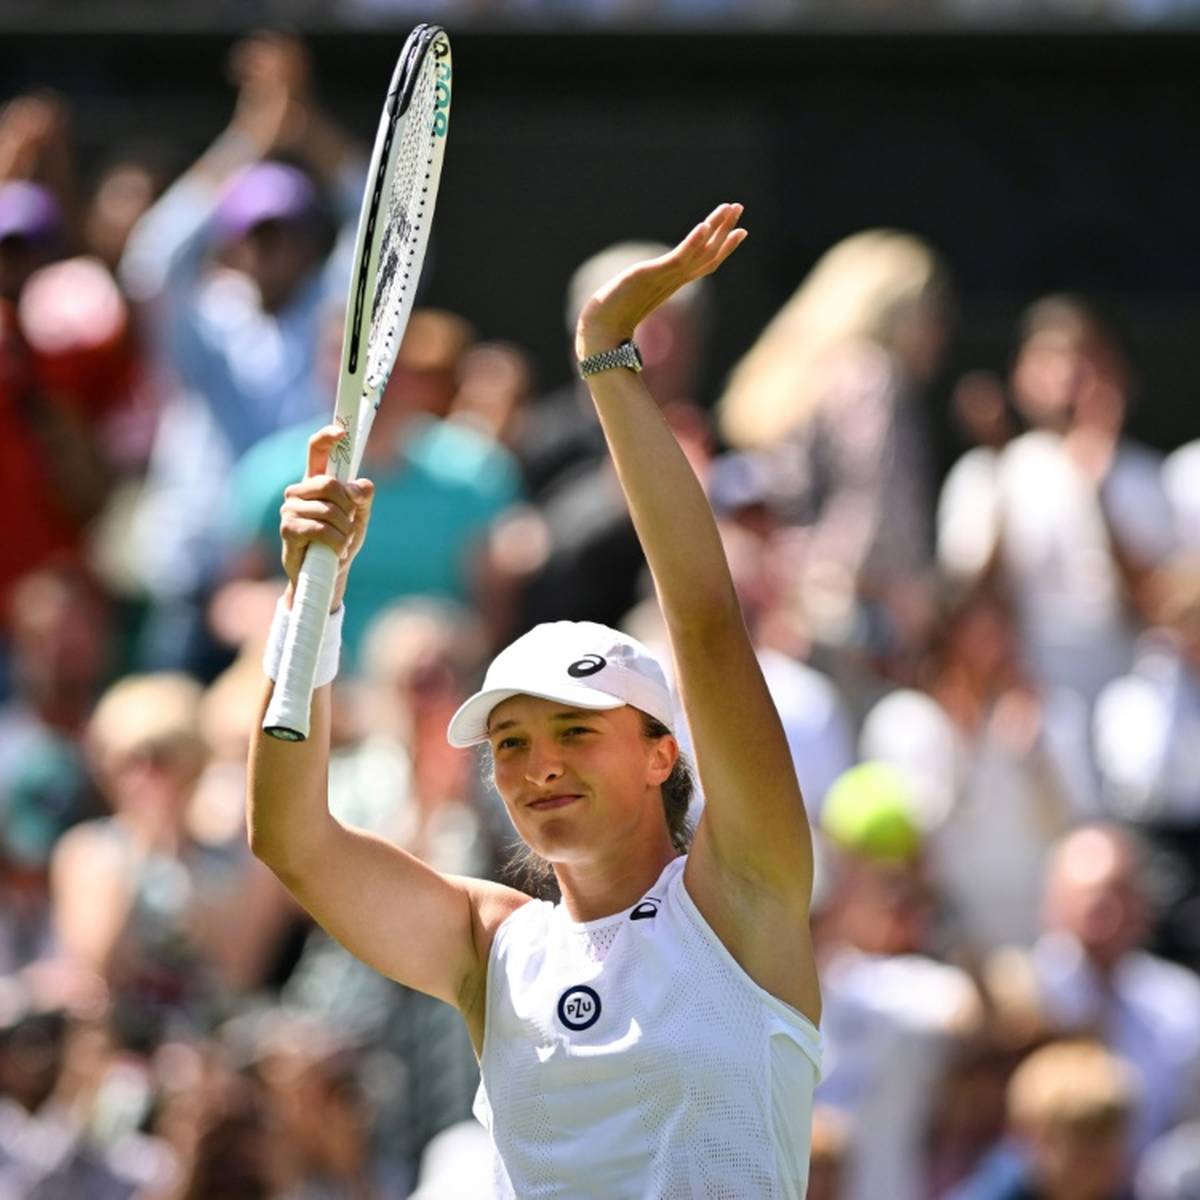 Seriensiegerin Iga Swiatek aus Polen hat ihr Auftaktmatch in Wimbledon souverän gewonnen.